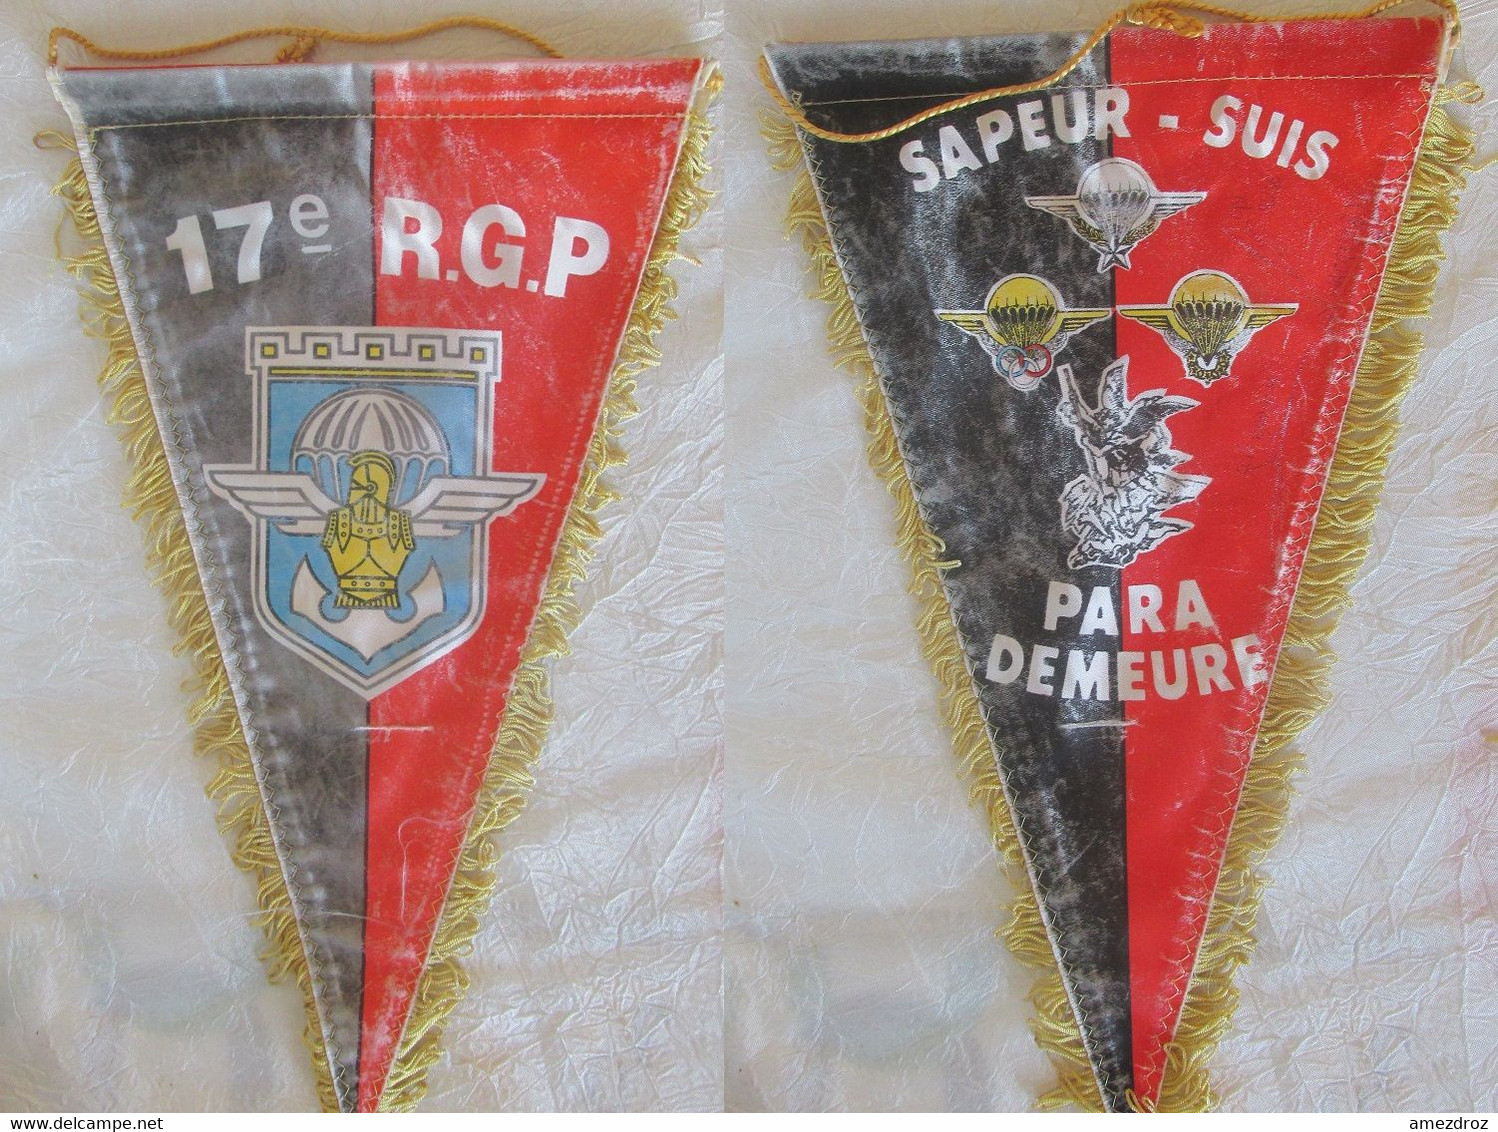 Fanion Militaire - 17e R.G.P Sapeur Suis Paras Demeure - Usé - Flags